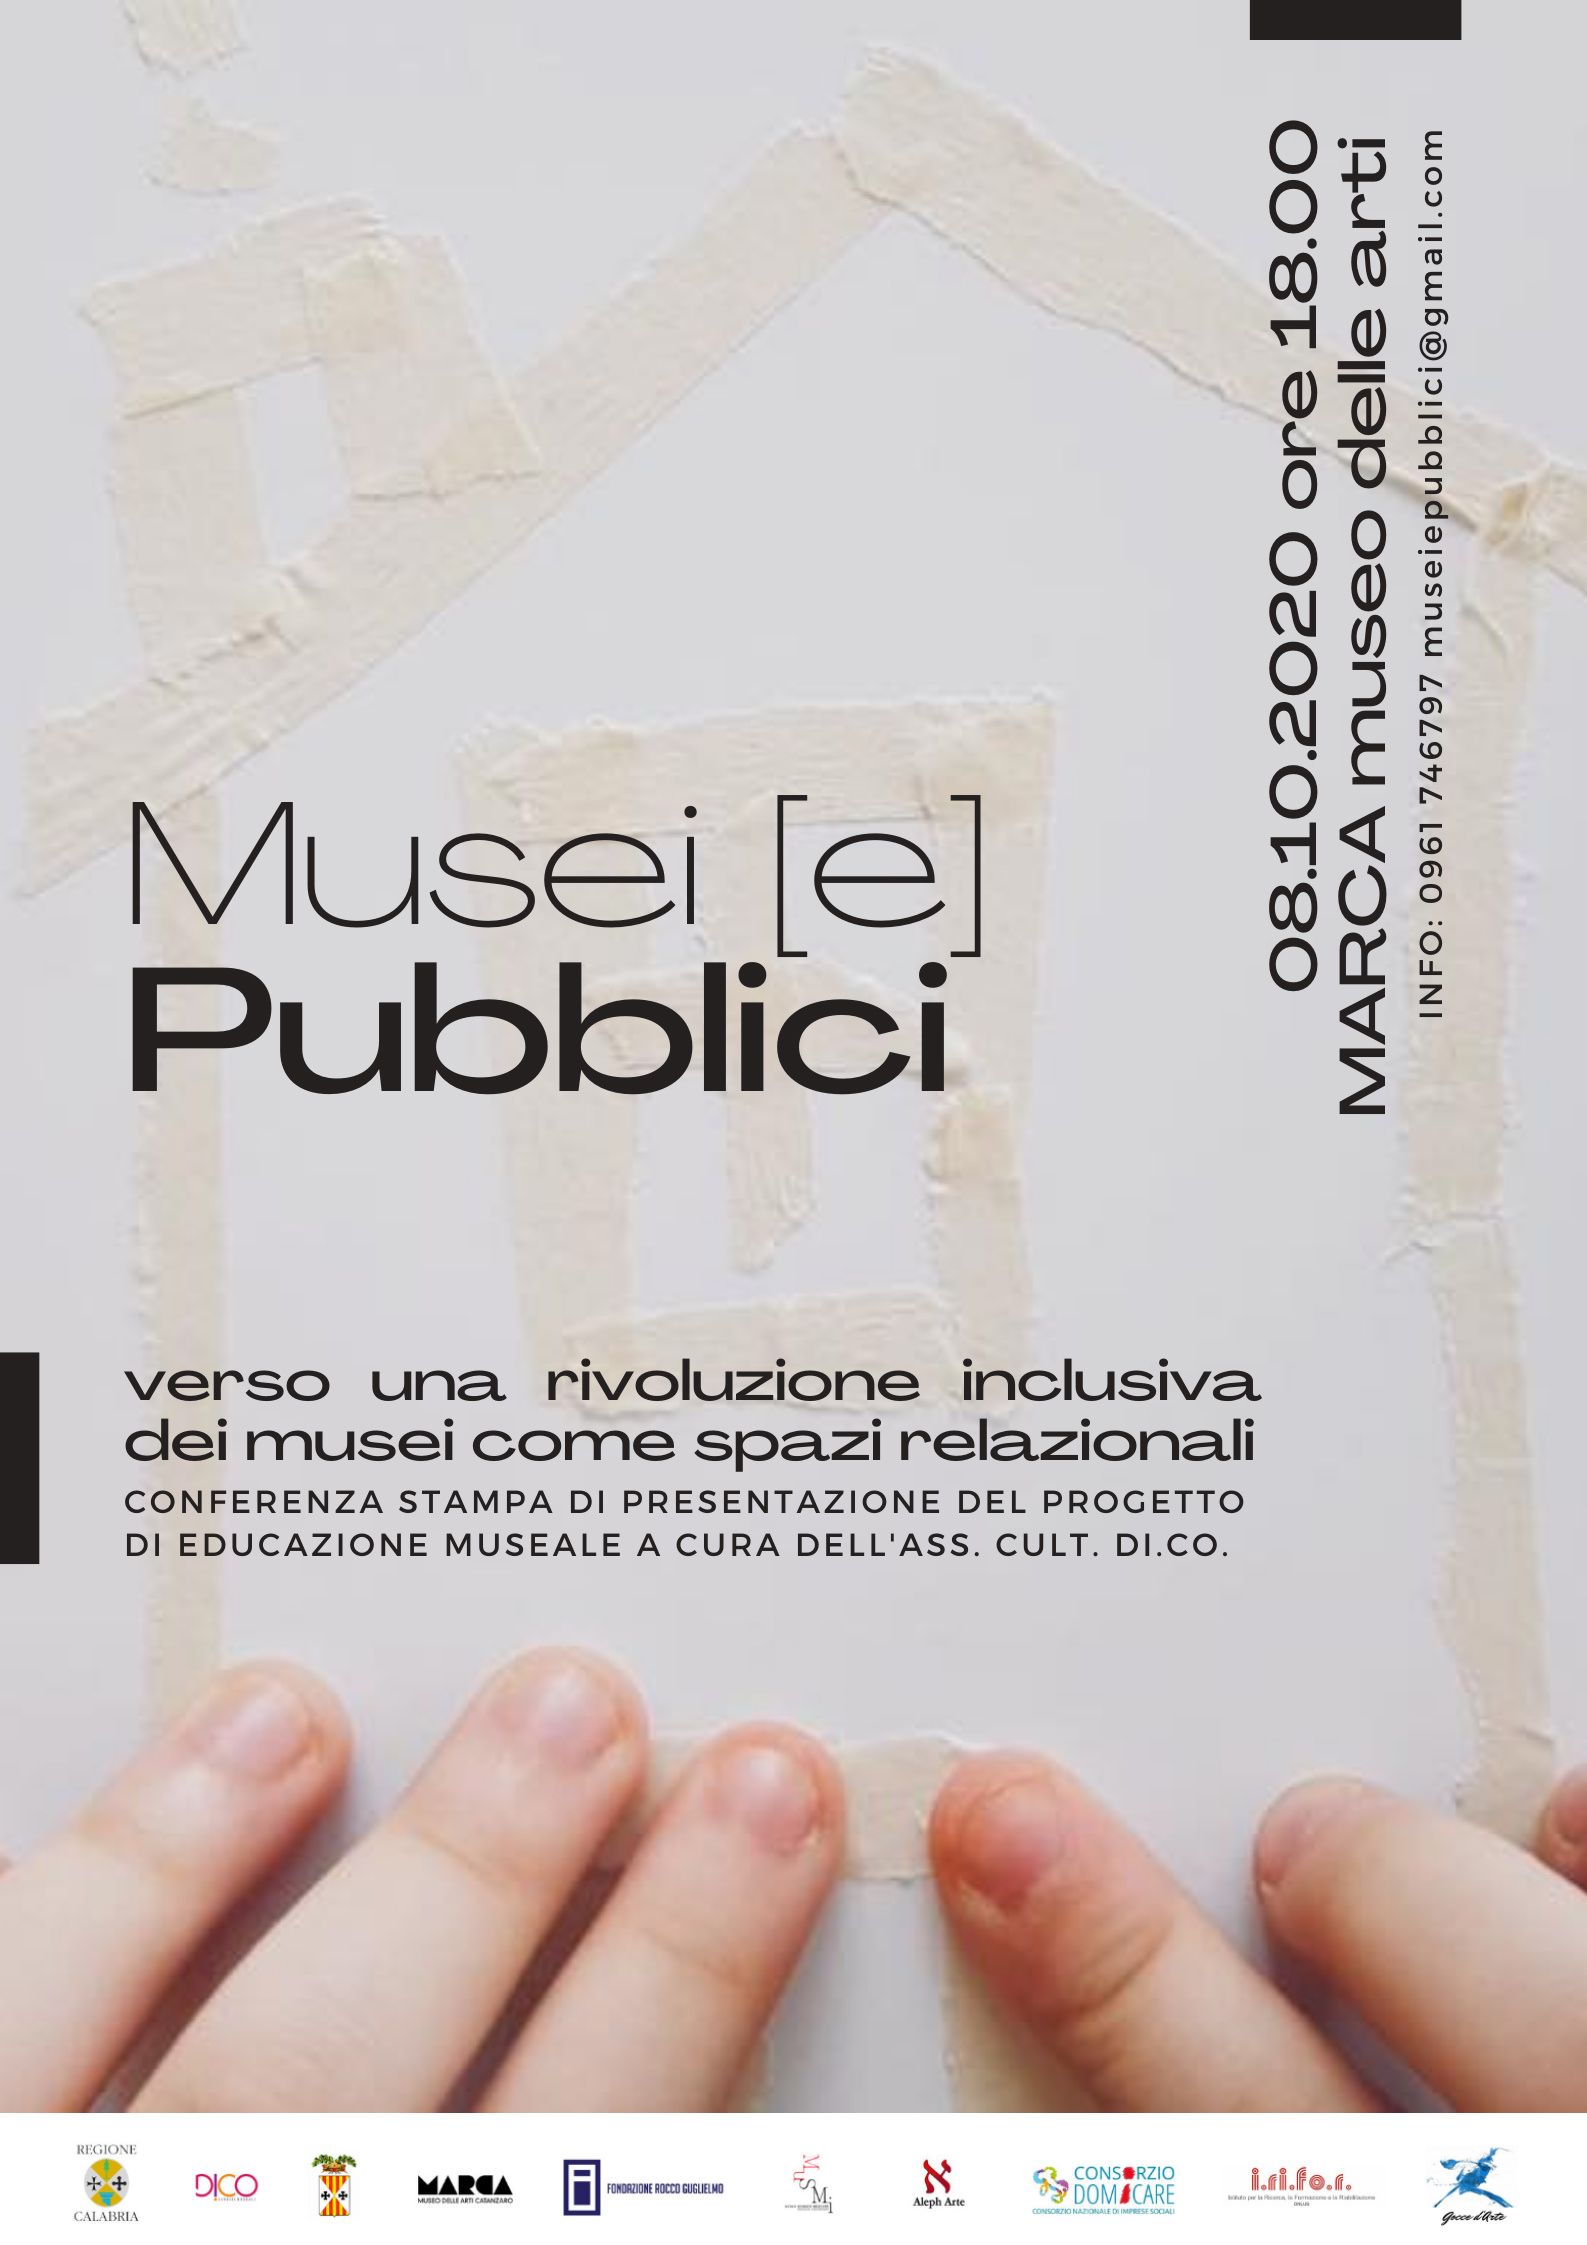 Musei (e) Pubblici, al Marca un nuovo progetto di "educazione" museale